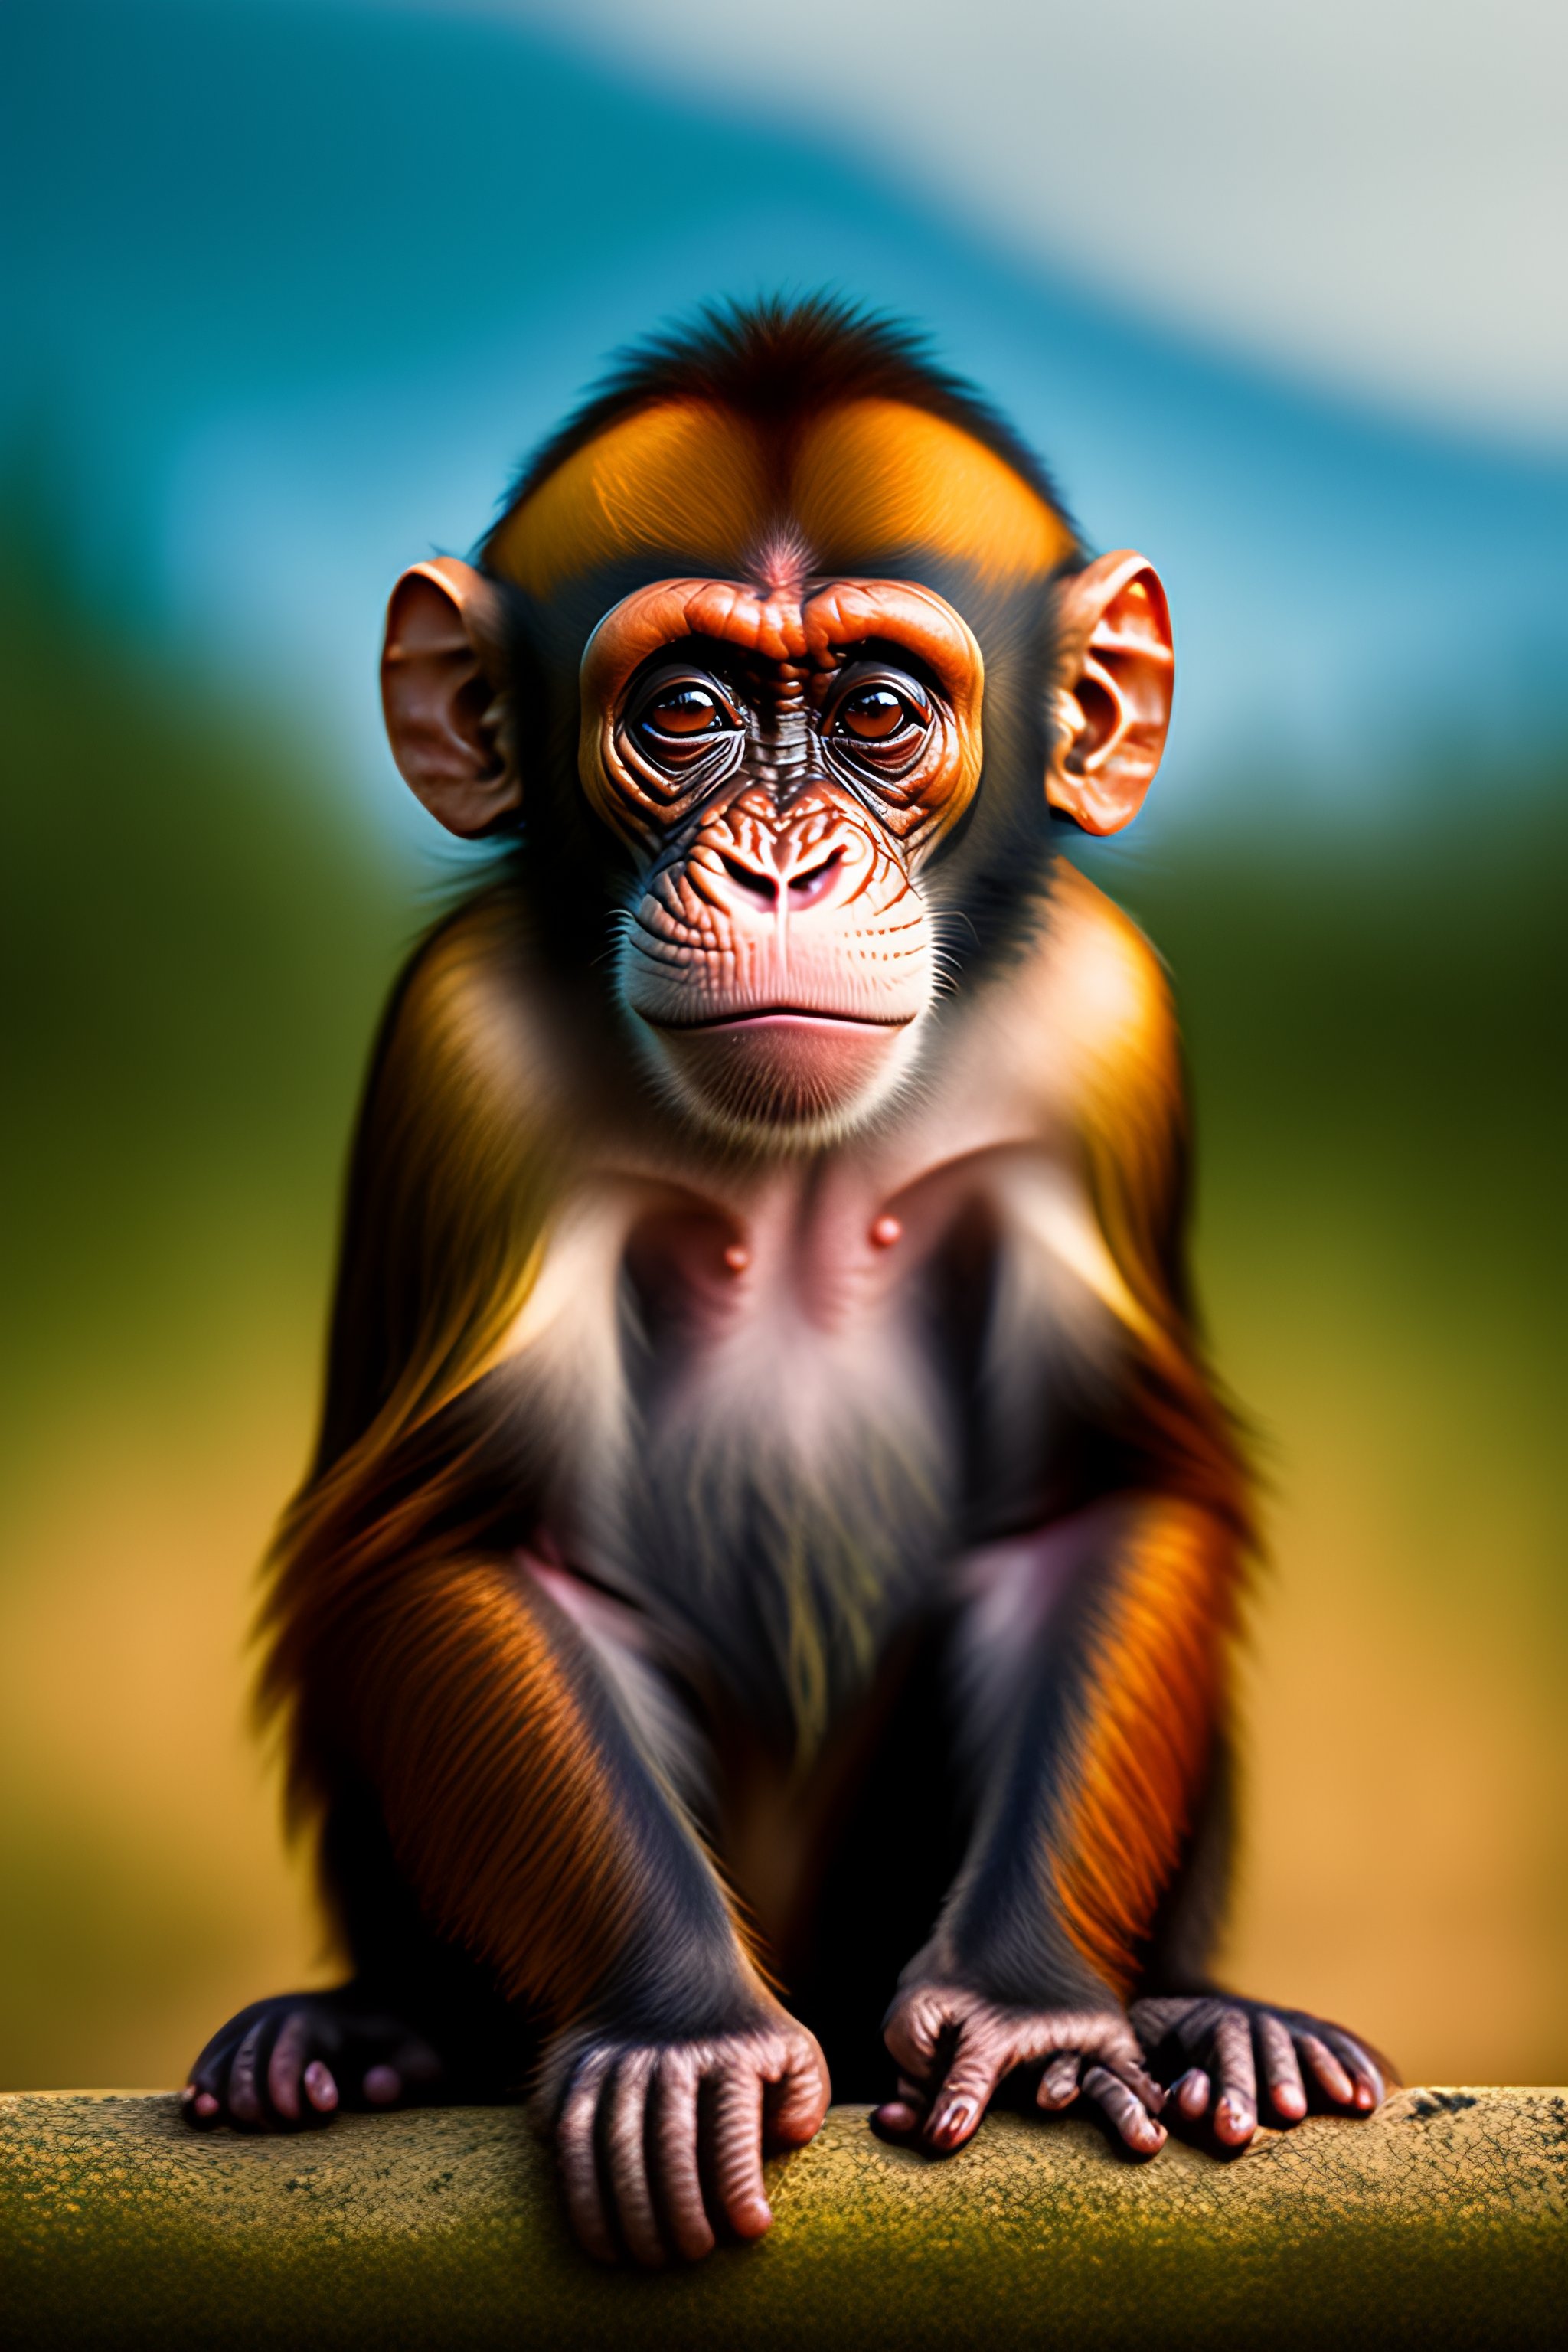 ugly baby monkey